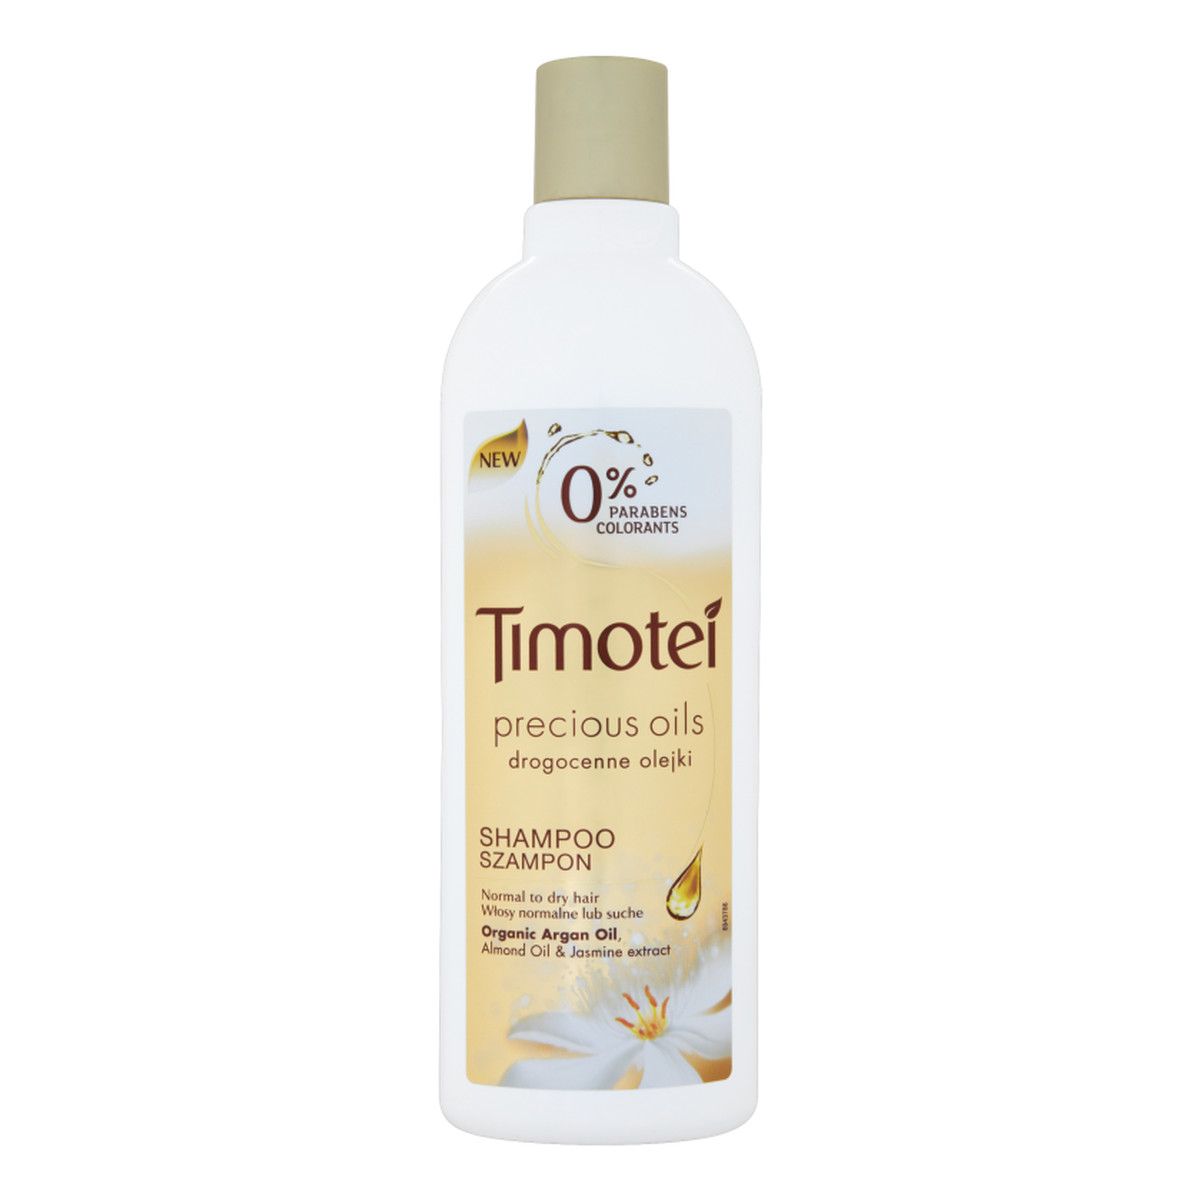 szampon timotei wlosy zniszczone opinie olejki